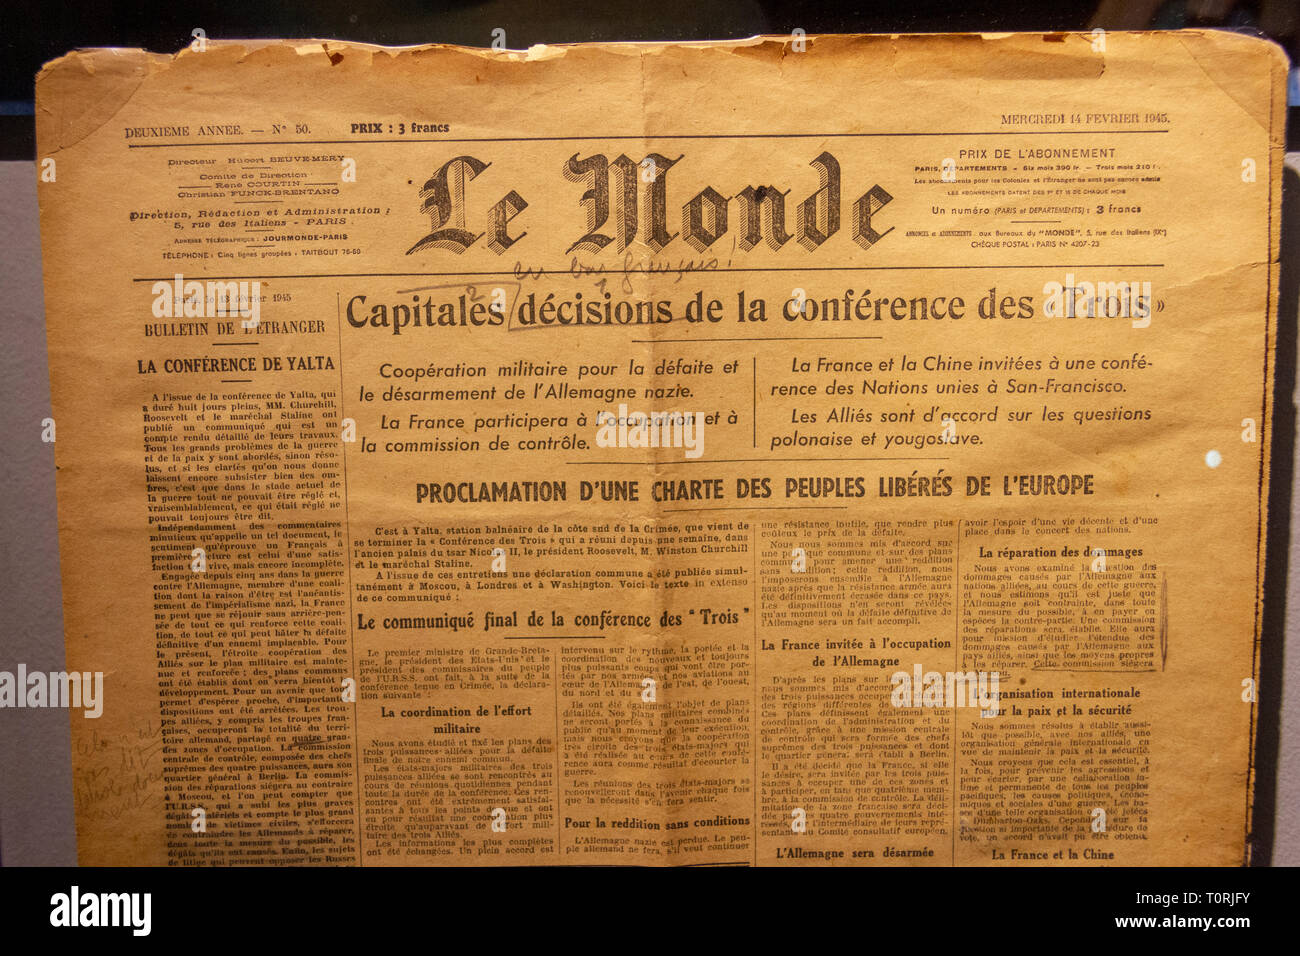 Le journal Le Monde du 14 février 1945, à la suite de la Conférence de Yalta, à l'affiche dans le Mémorial de Caen (Mémorial de Caen), Normandie, France. Banque D'Images